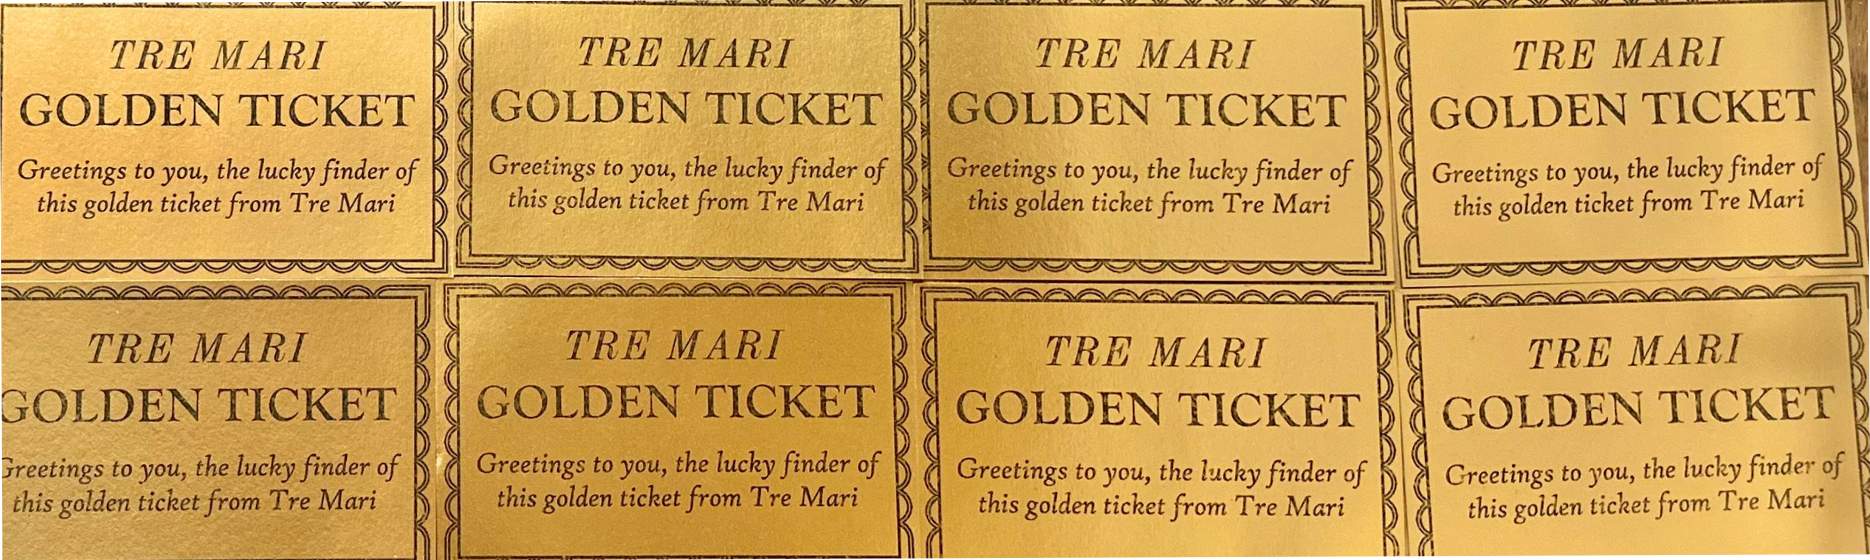 Tre Mari Golden Ticket Contest